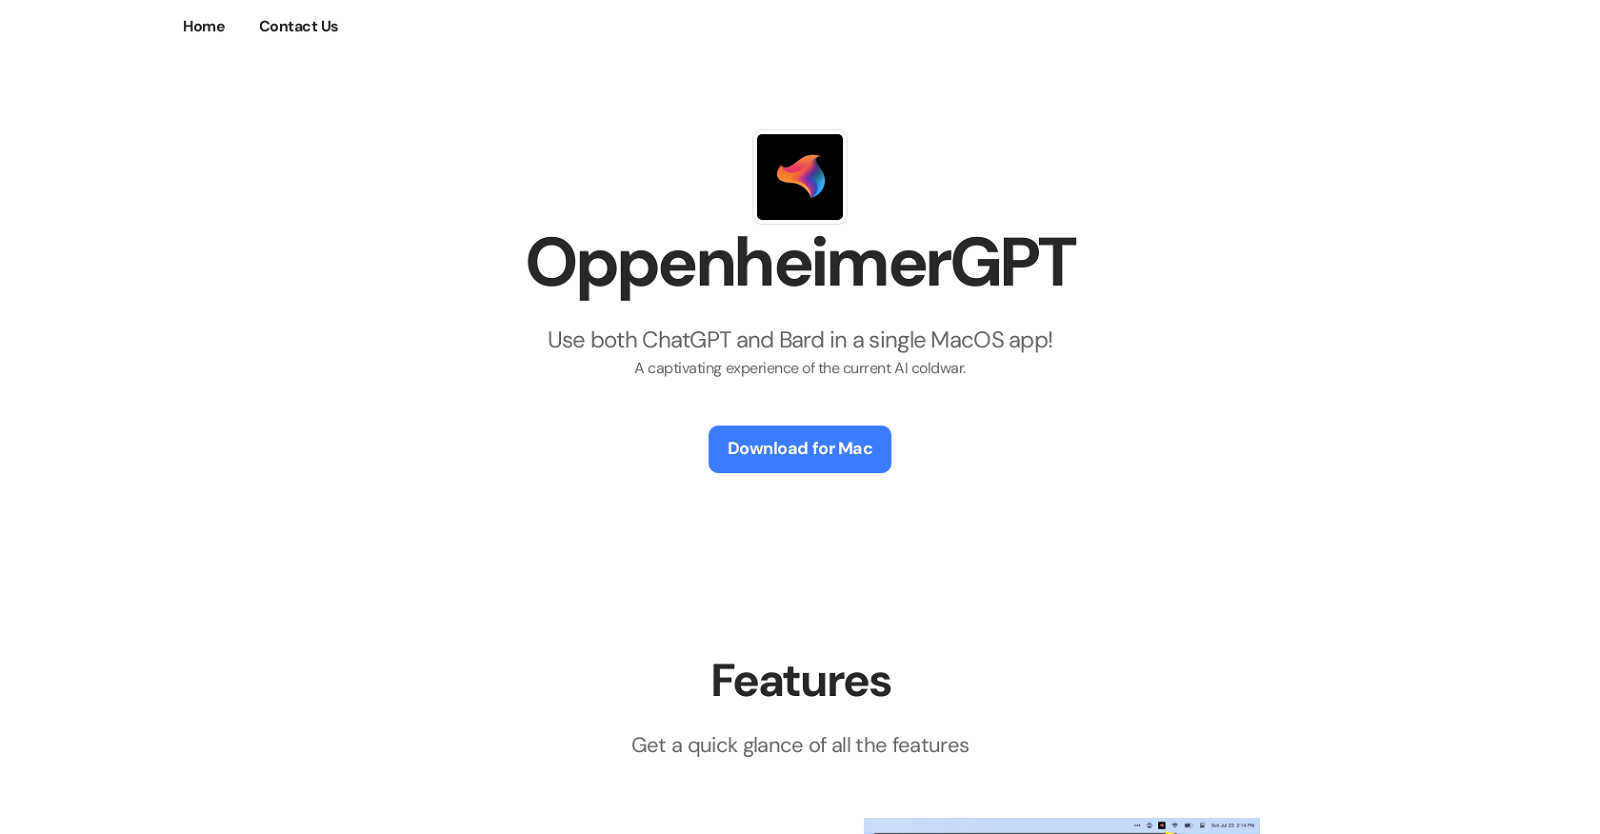 OppenheimerGPT website